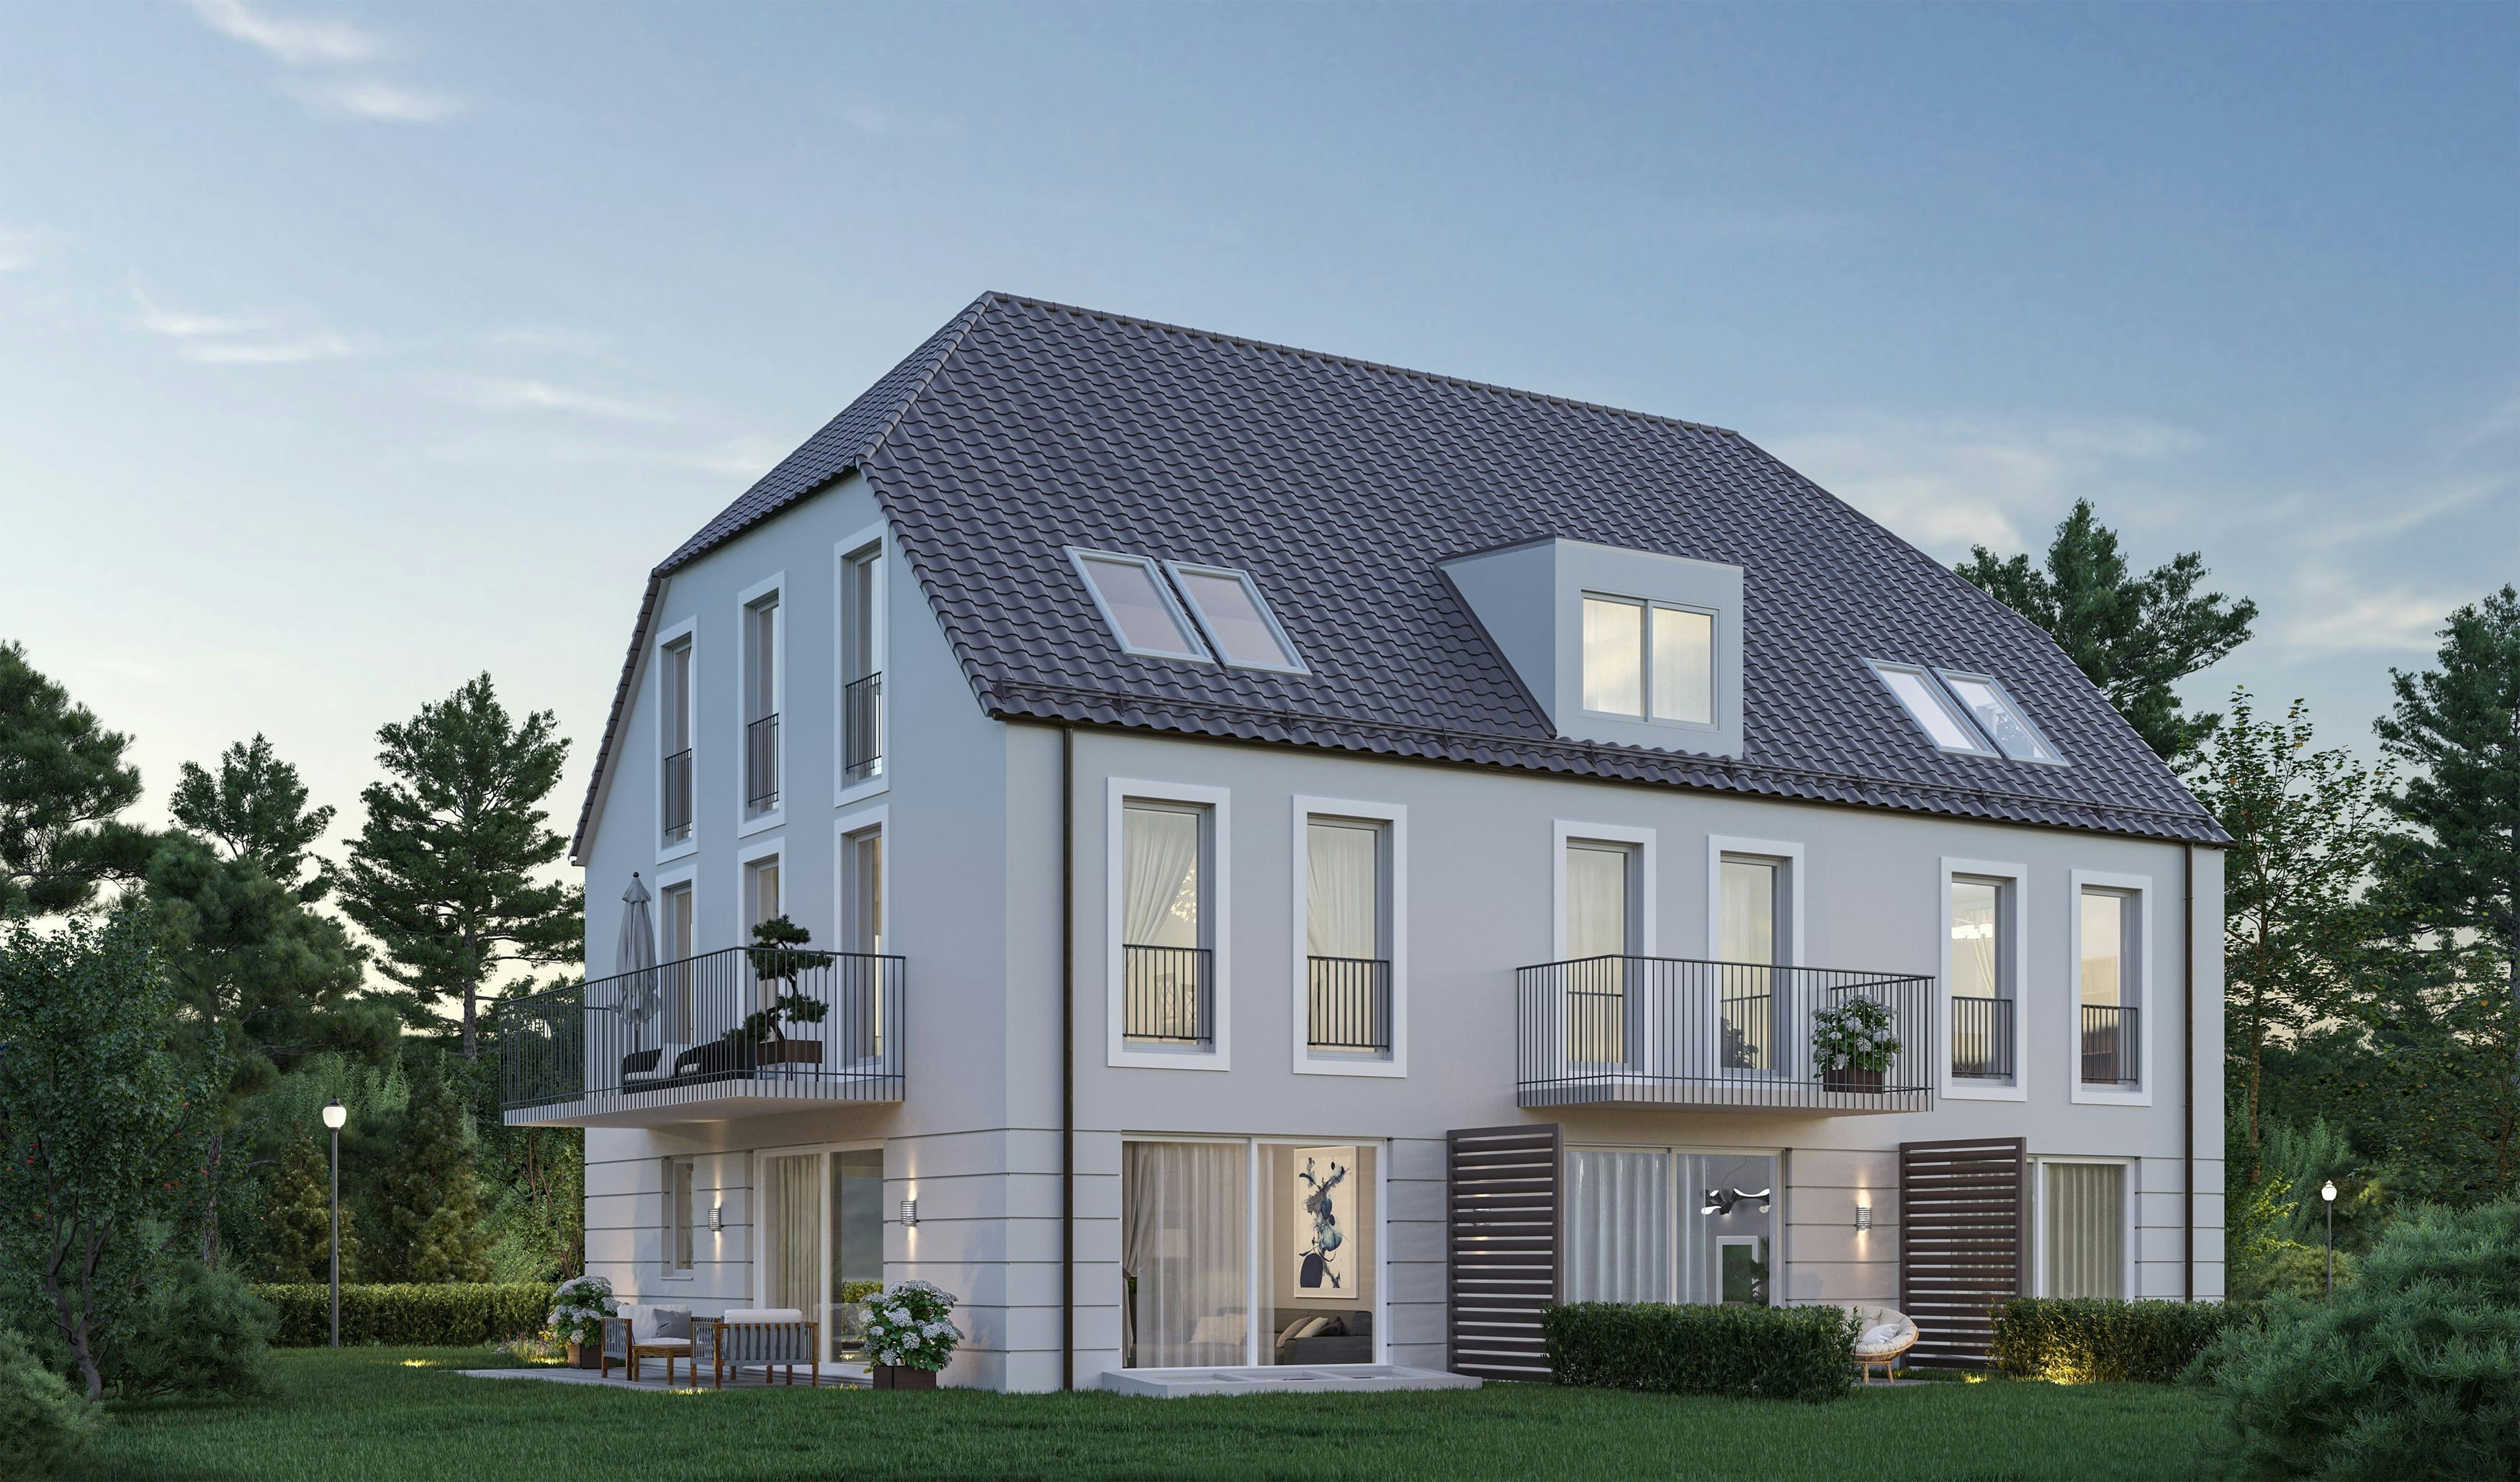 3D Visualisierung eines Mehrfamilienhauses mit Terrassen im Raum München, Deutschland